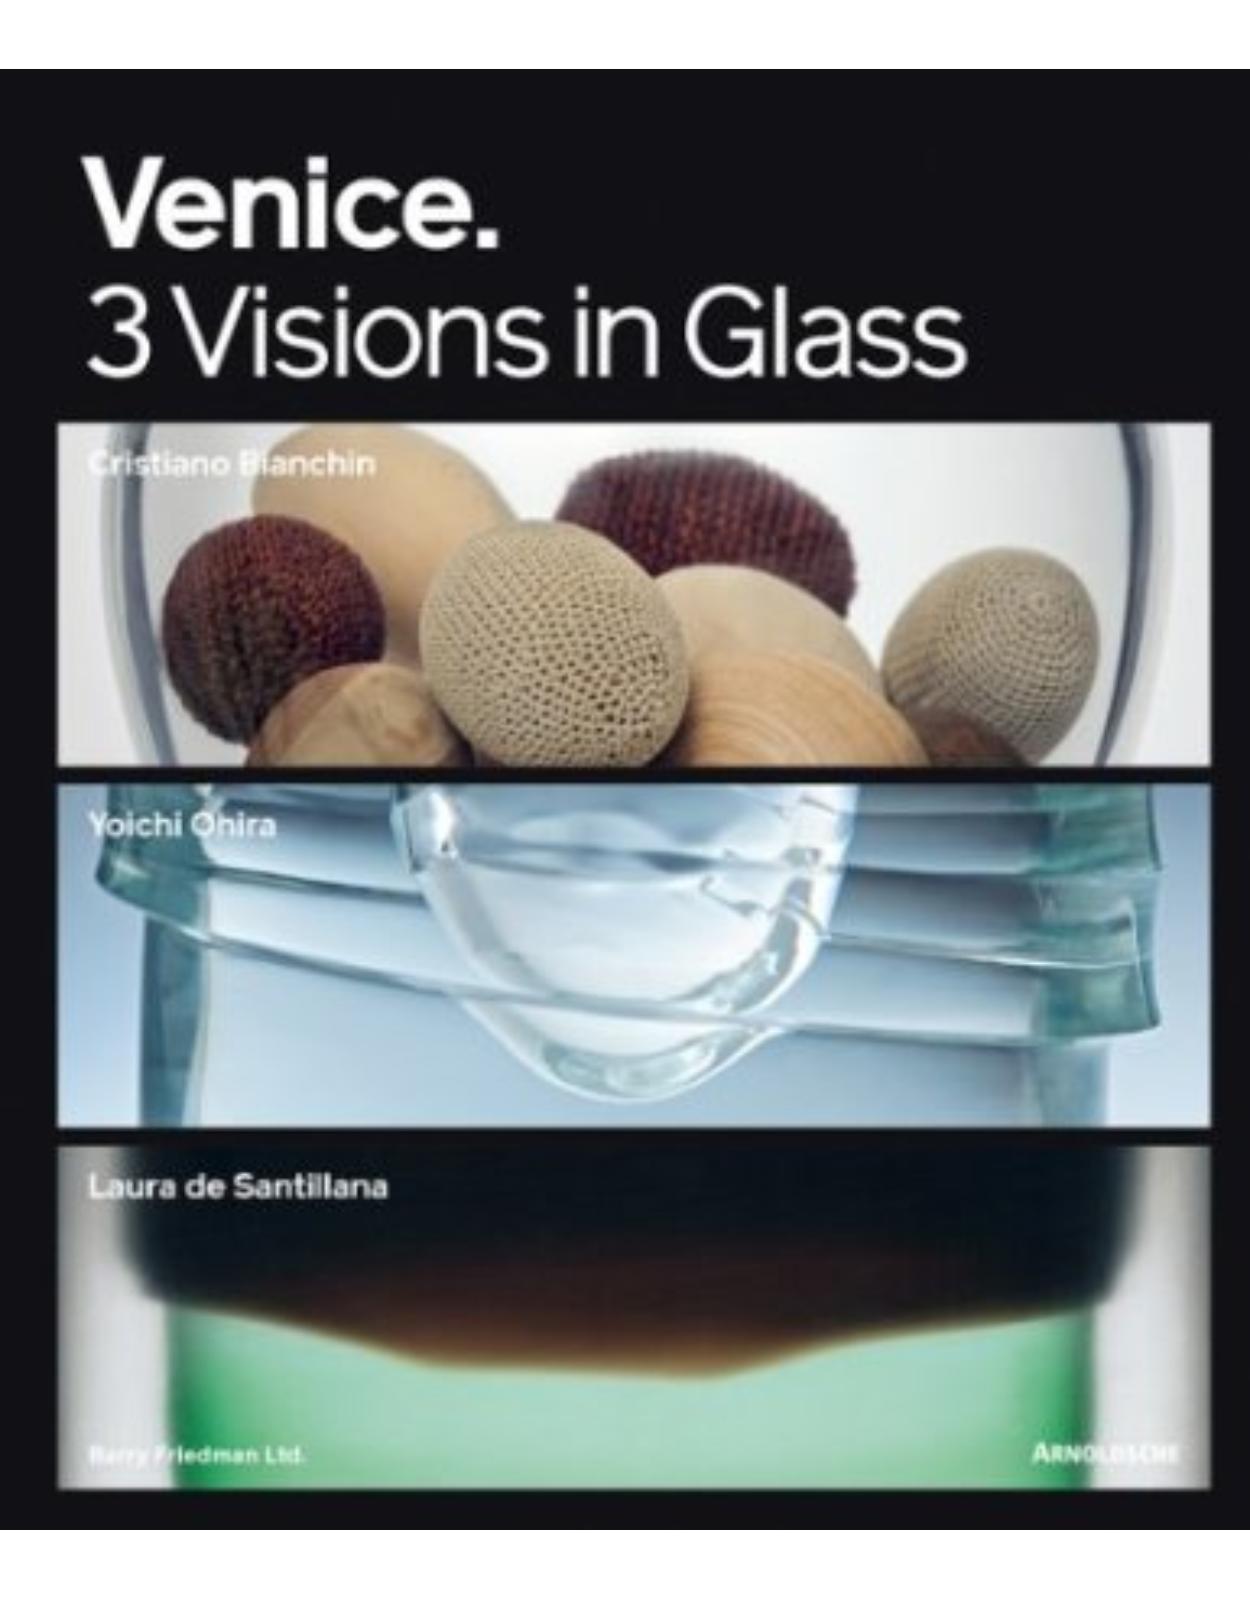 Venice: 3 Visions in Glass: Cristiano Bianchin, Yoichi Ohira, Laura de Santillana